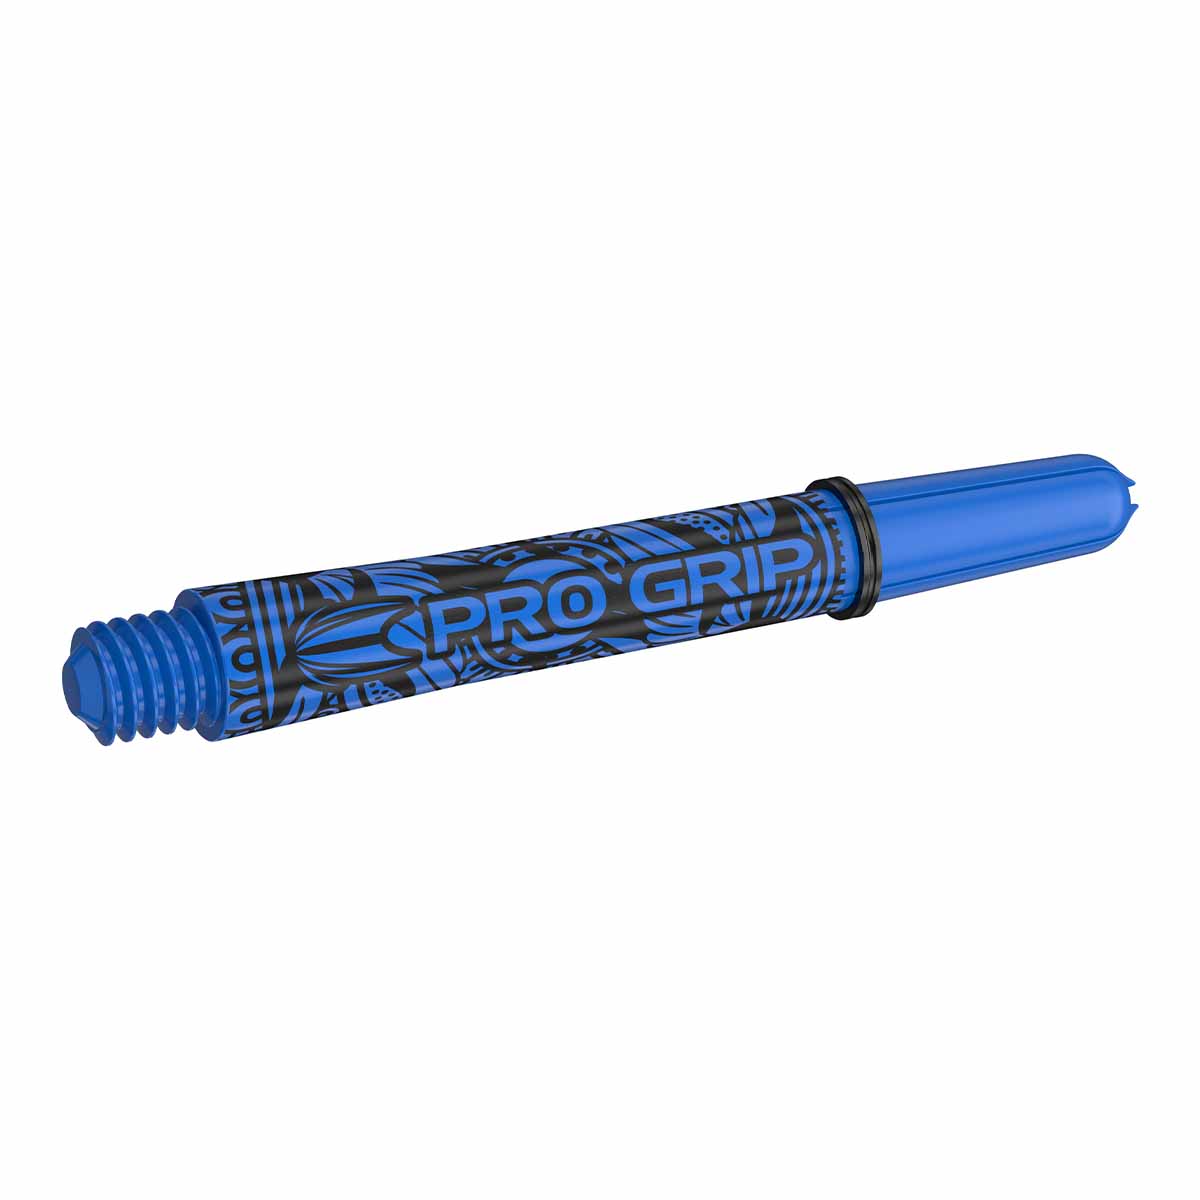 Target INK Pro Grip Shaft Blue/Blau (versch. L?ngen) Short 34 mm von TARGET